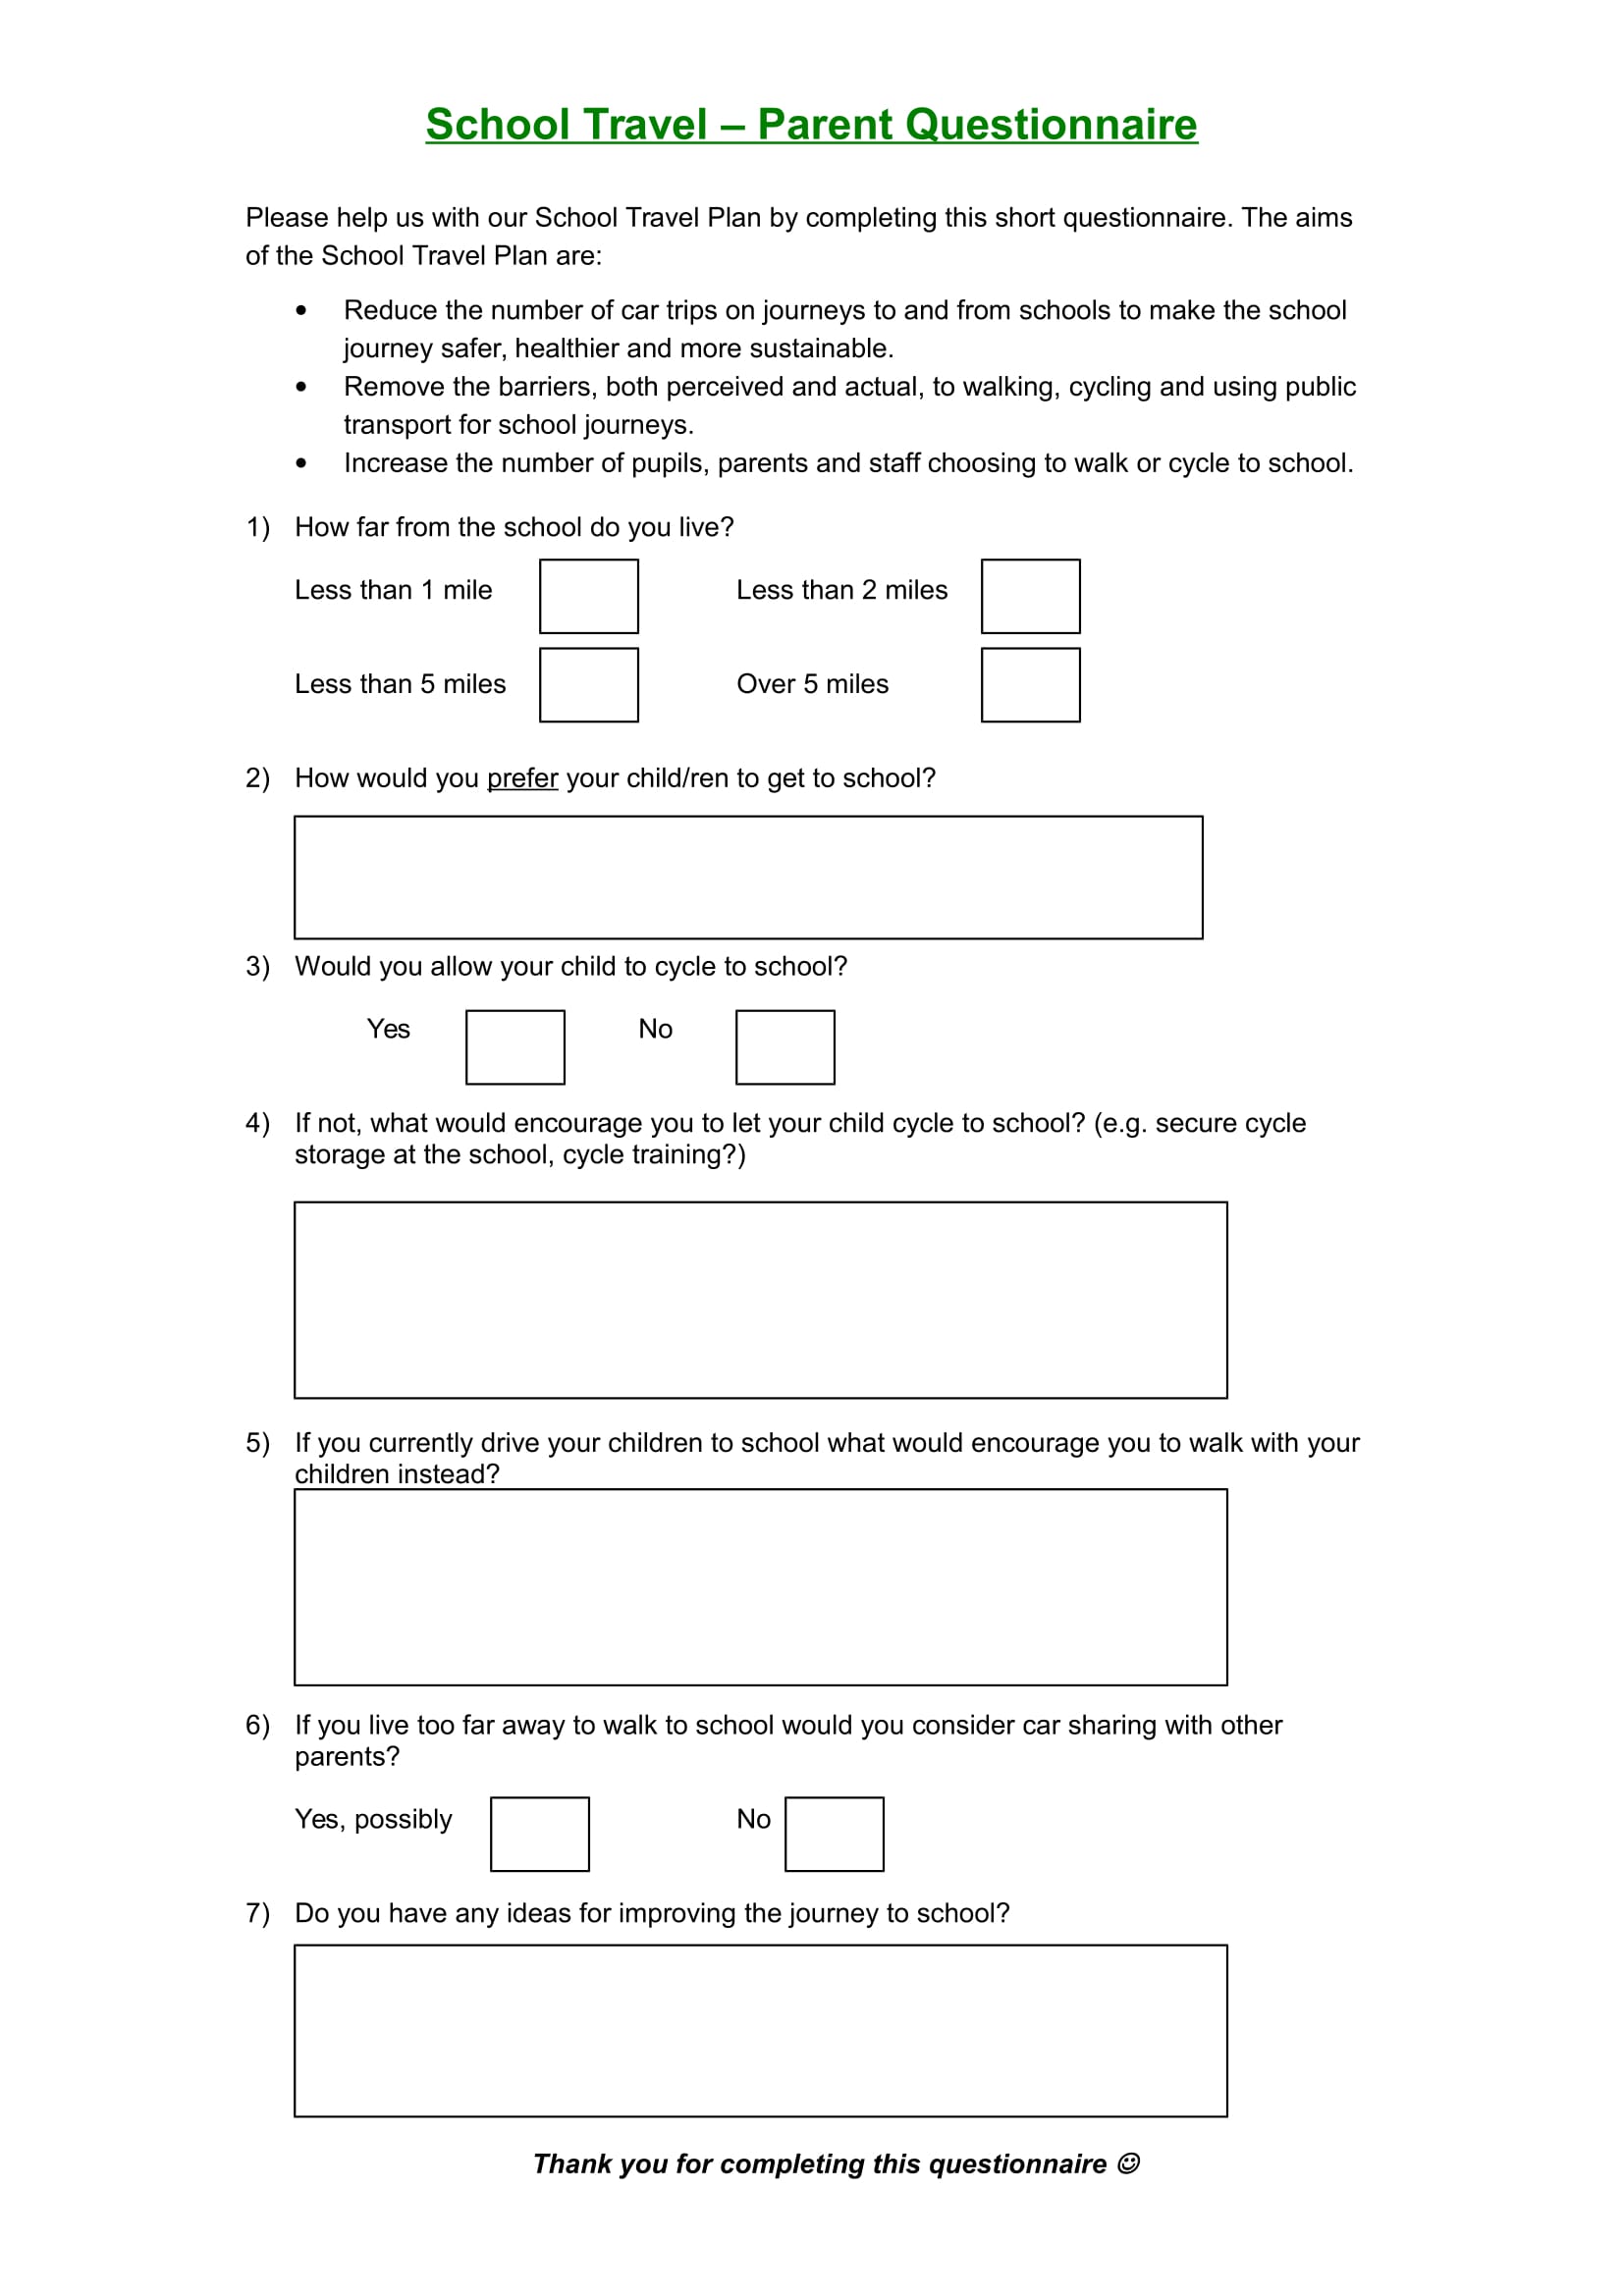 School Travel-Parent Survey Questionnaire Example